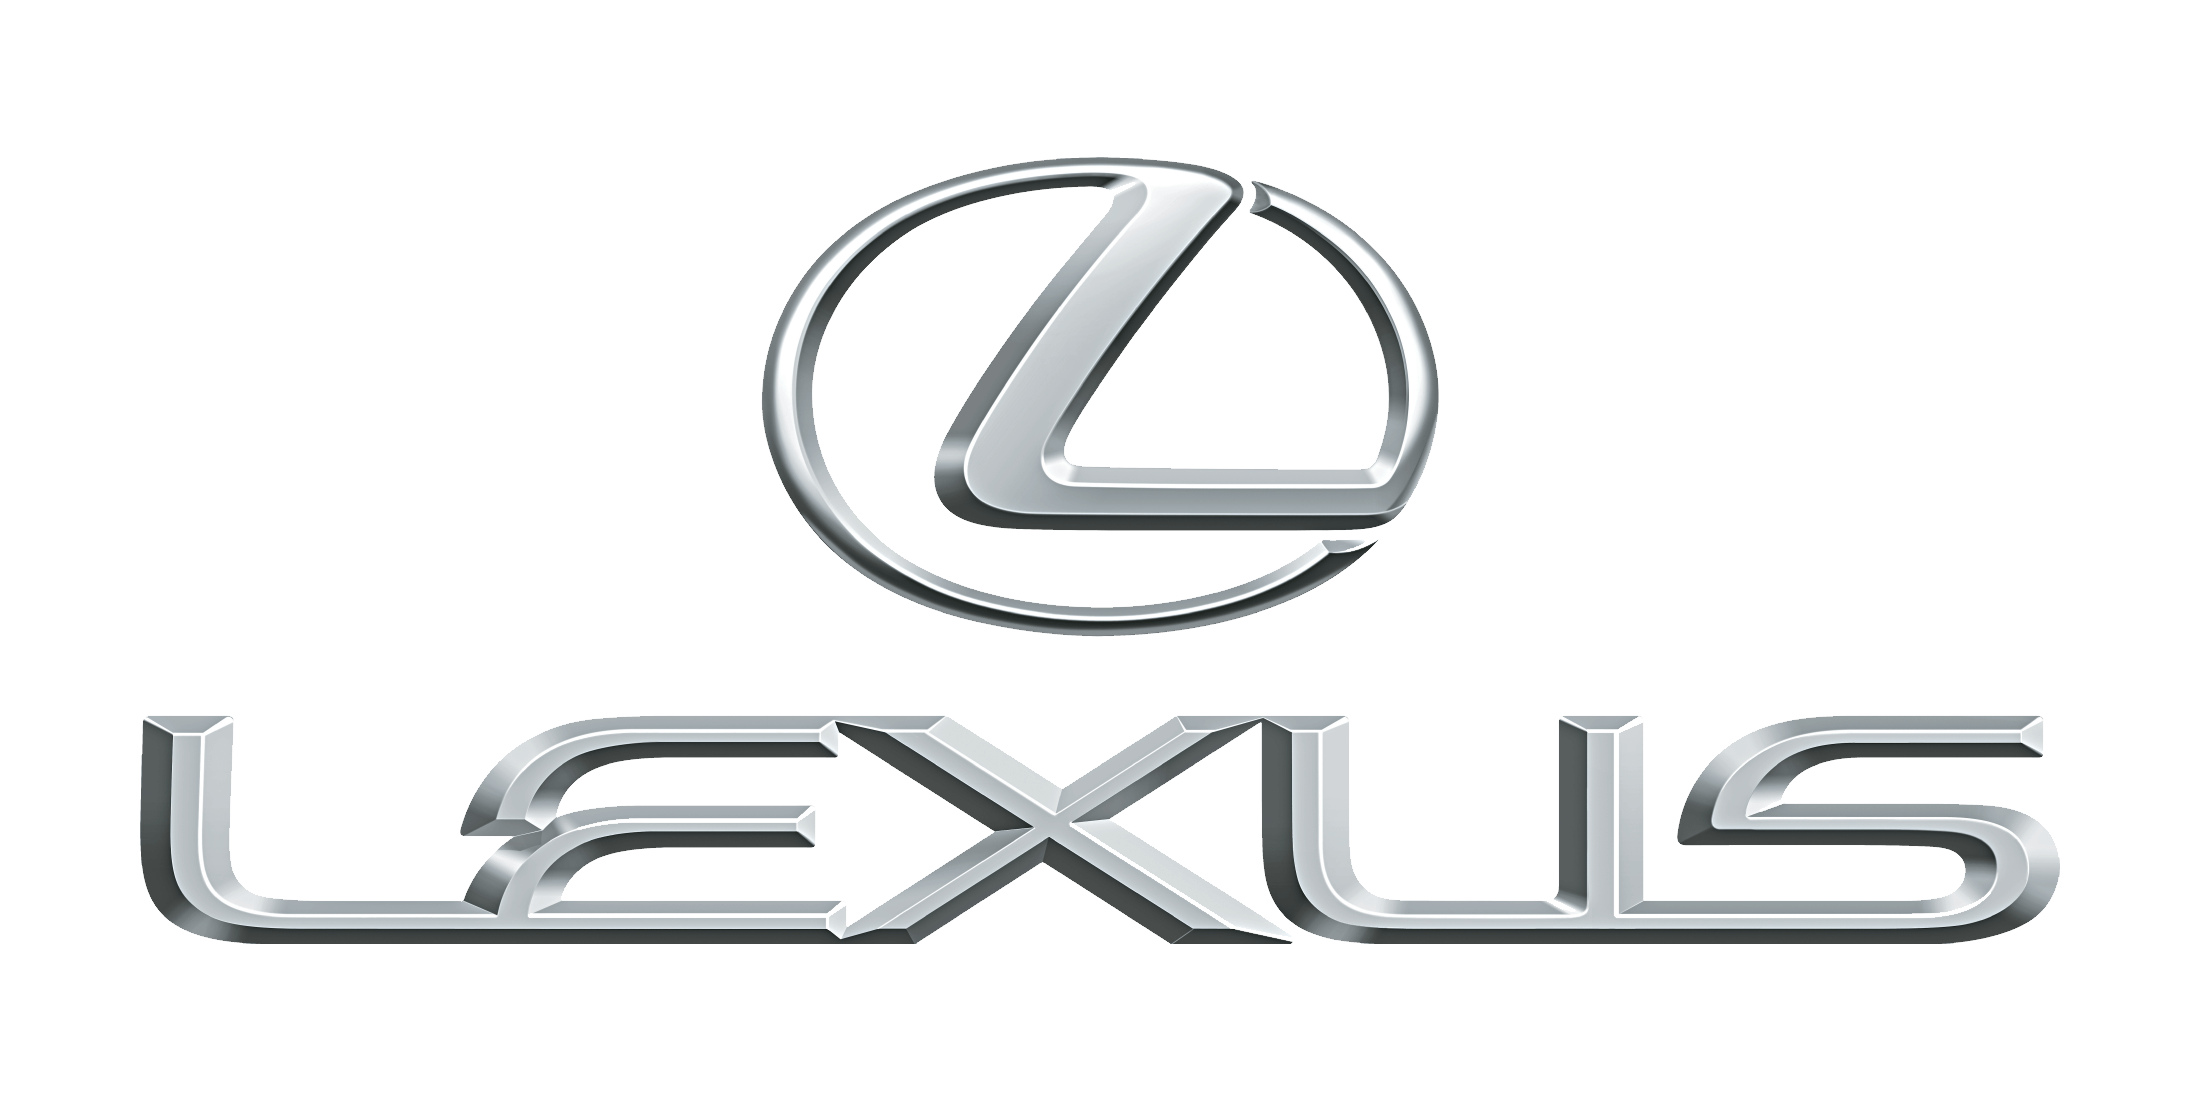 Lexus Logos PNG Image.